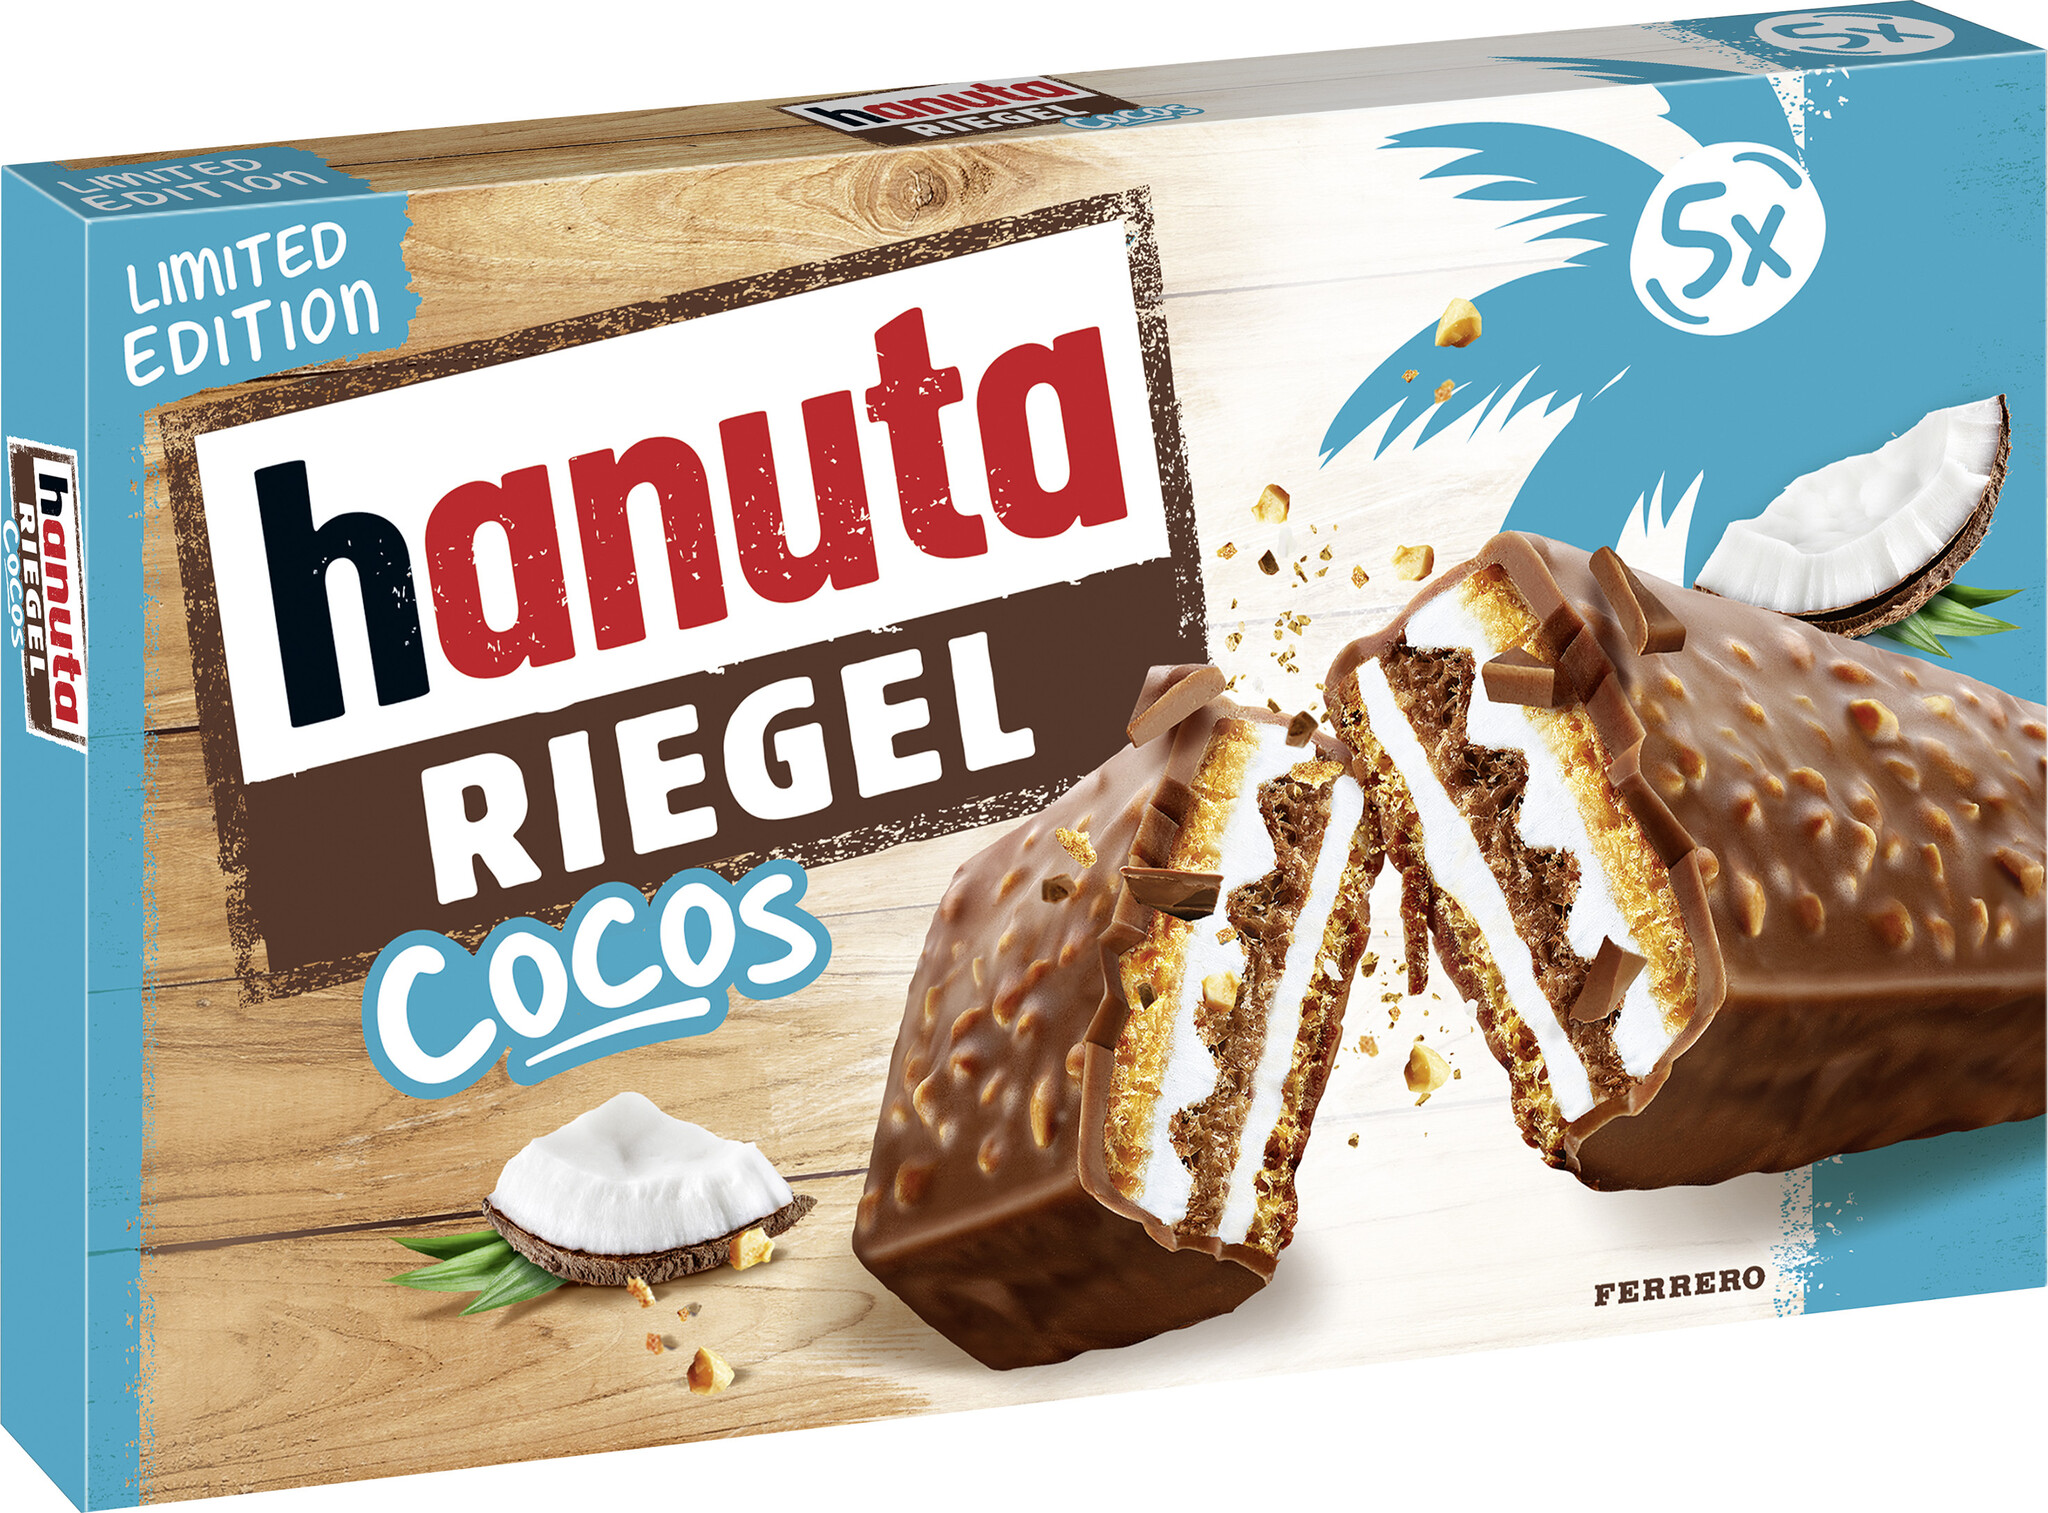 hanuta Riegel Cocos Limited Edition - Vorratspack mit 16 Packungen zu je 172,5g